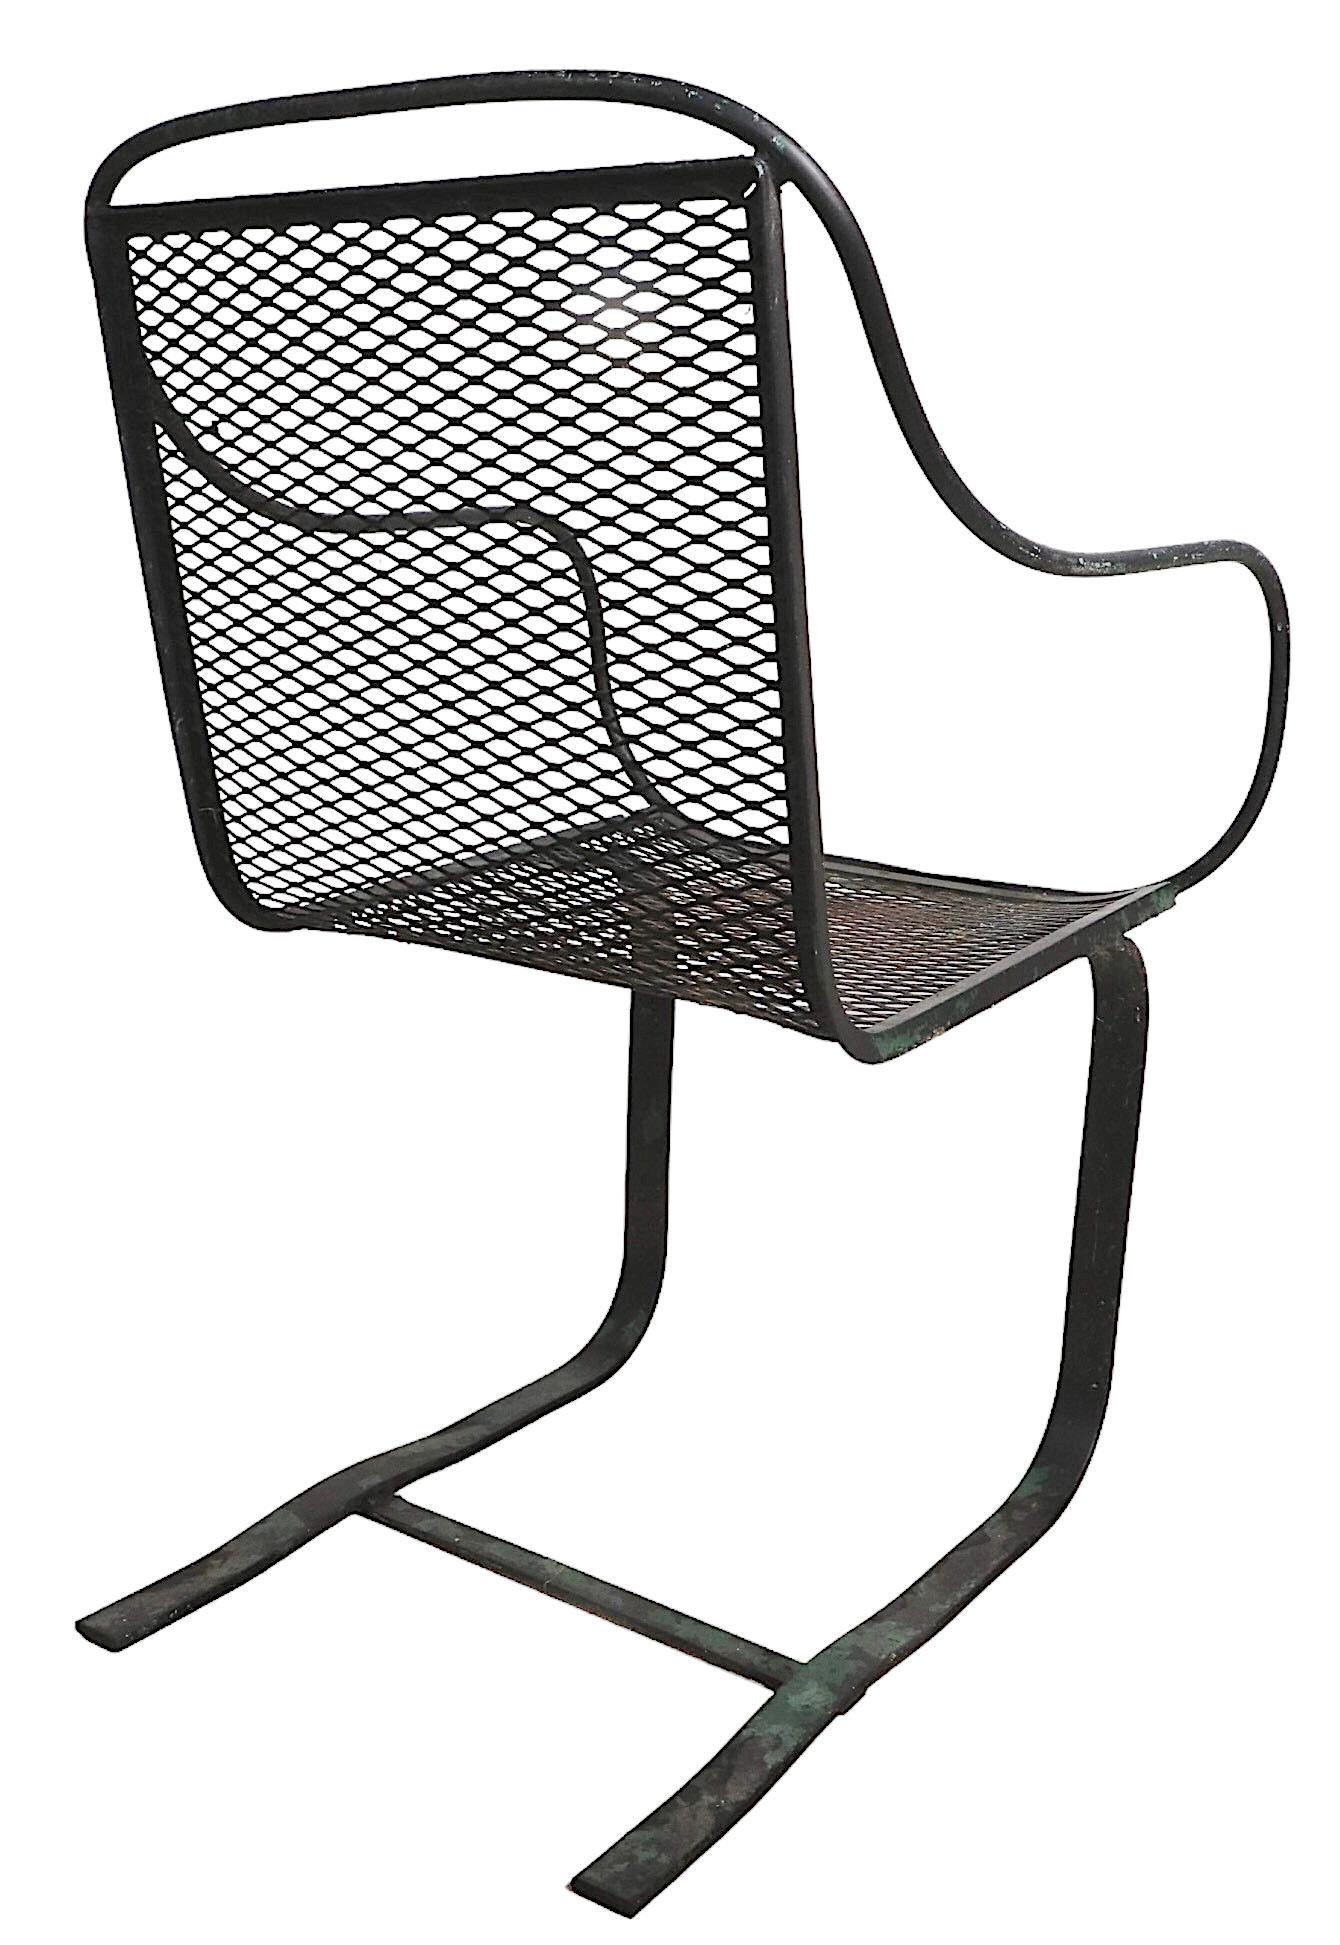 Schicker architektonischer freitragender Loungesessel aus der Mitte des Jahrhunderts, der Salterini zugeschrieben wird. Der Stuhl hat ein schmiedeeisernes Gestell, einen freitragenden Federfuß und eine durchgehende Sitzfläche und Rückenlehne aus